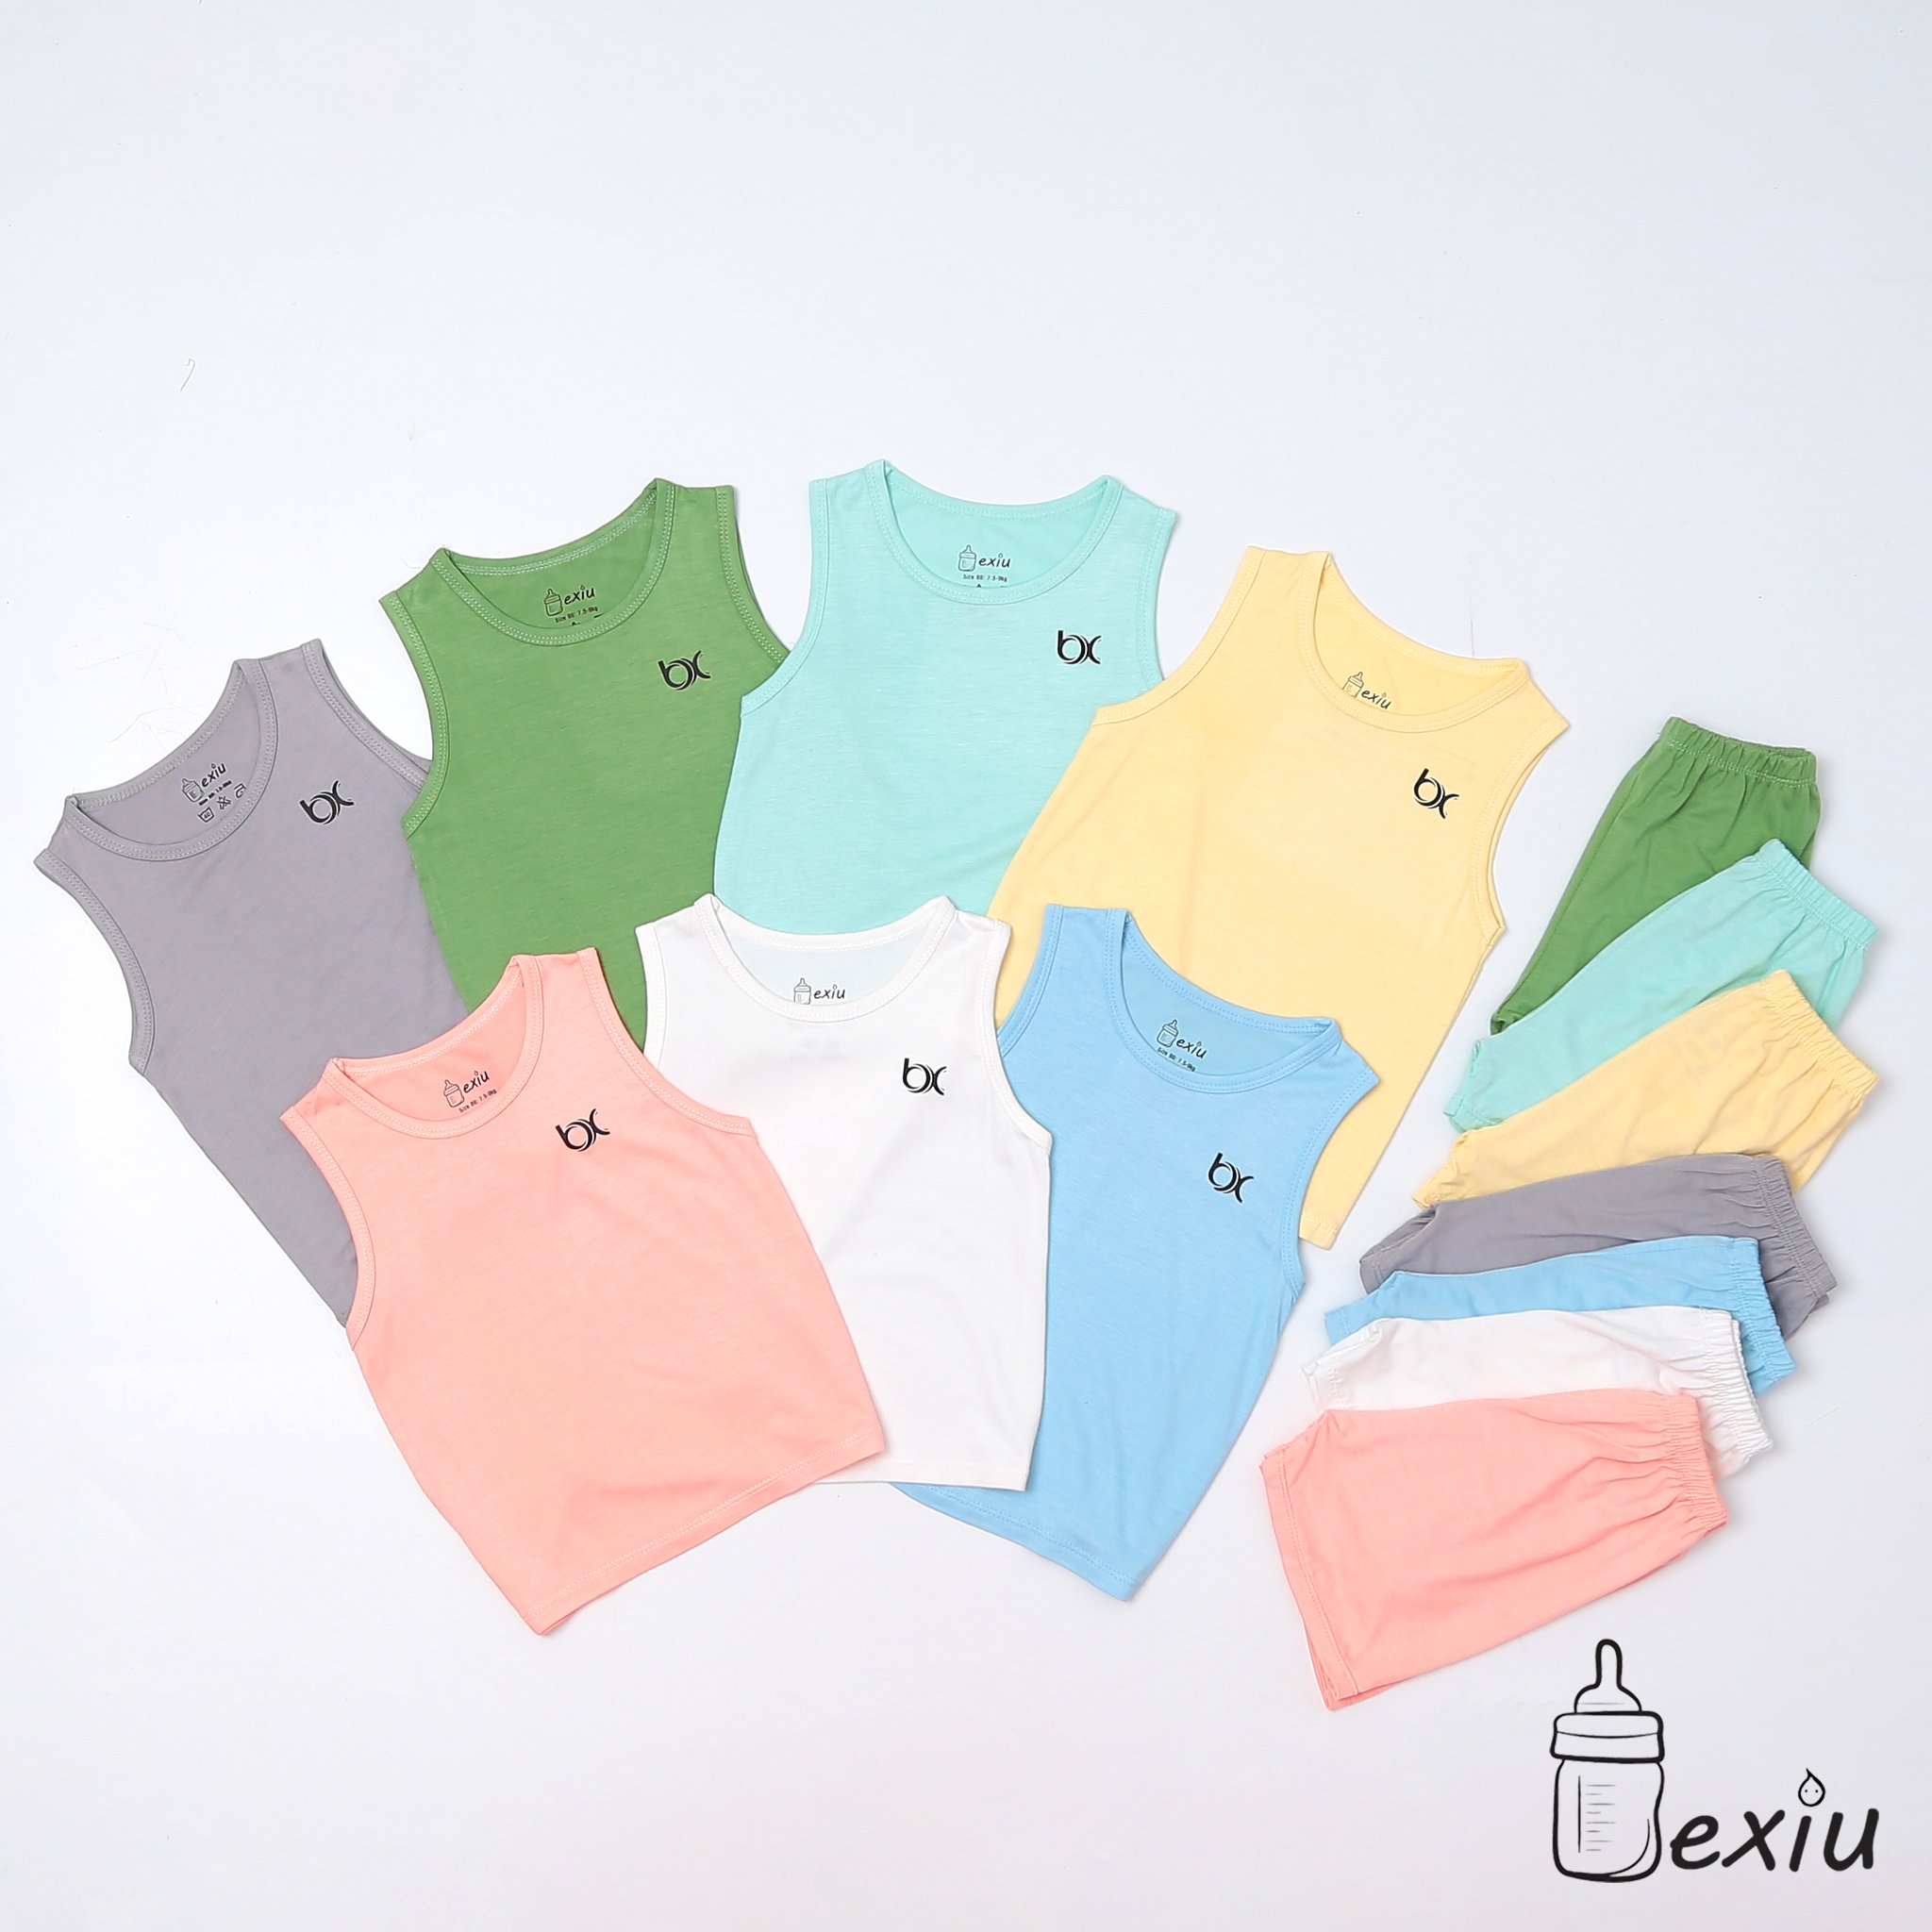 HCMBộ ba lỗ màu Bexiu bx - Quần áo trẻ sơ sinh vải cotton lạnh mát mềm